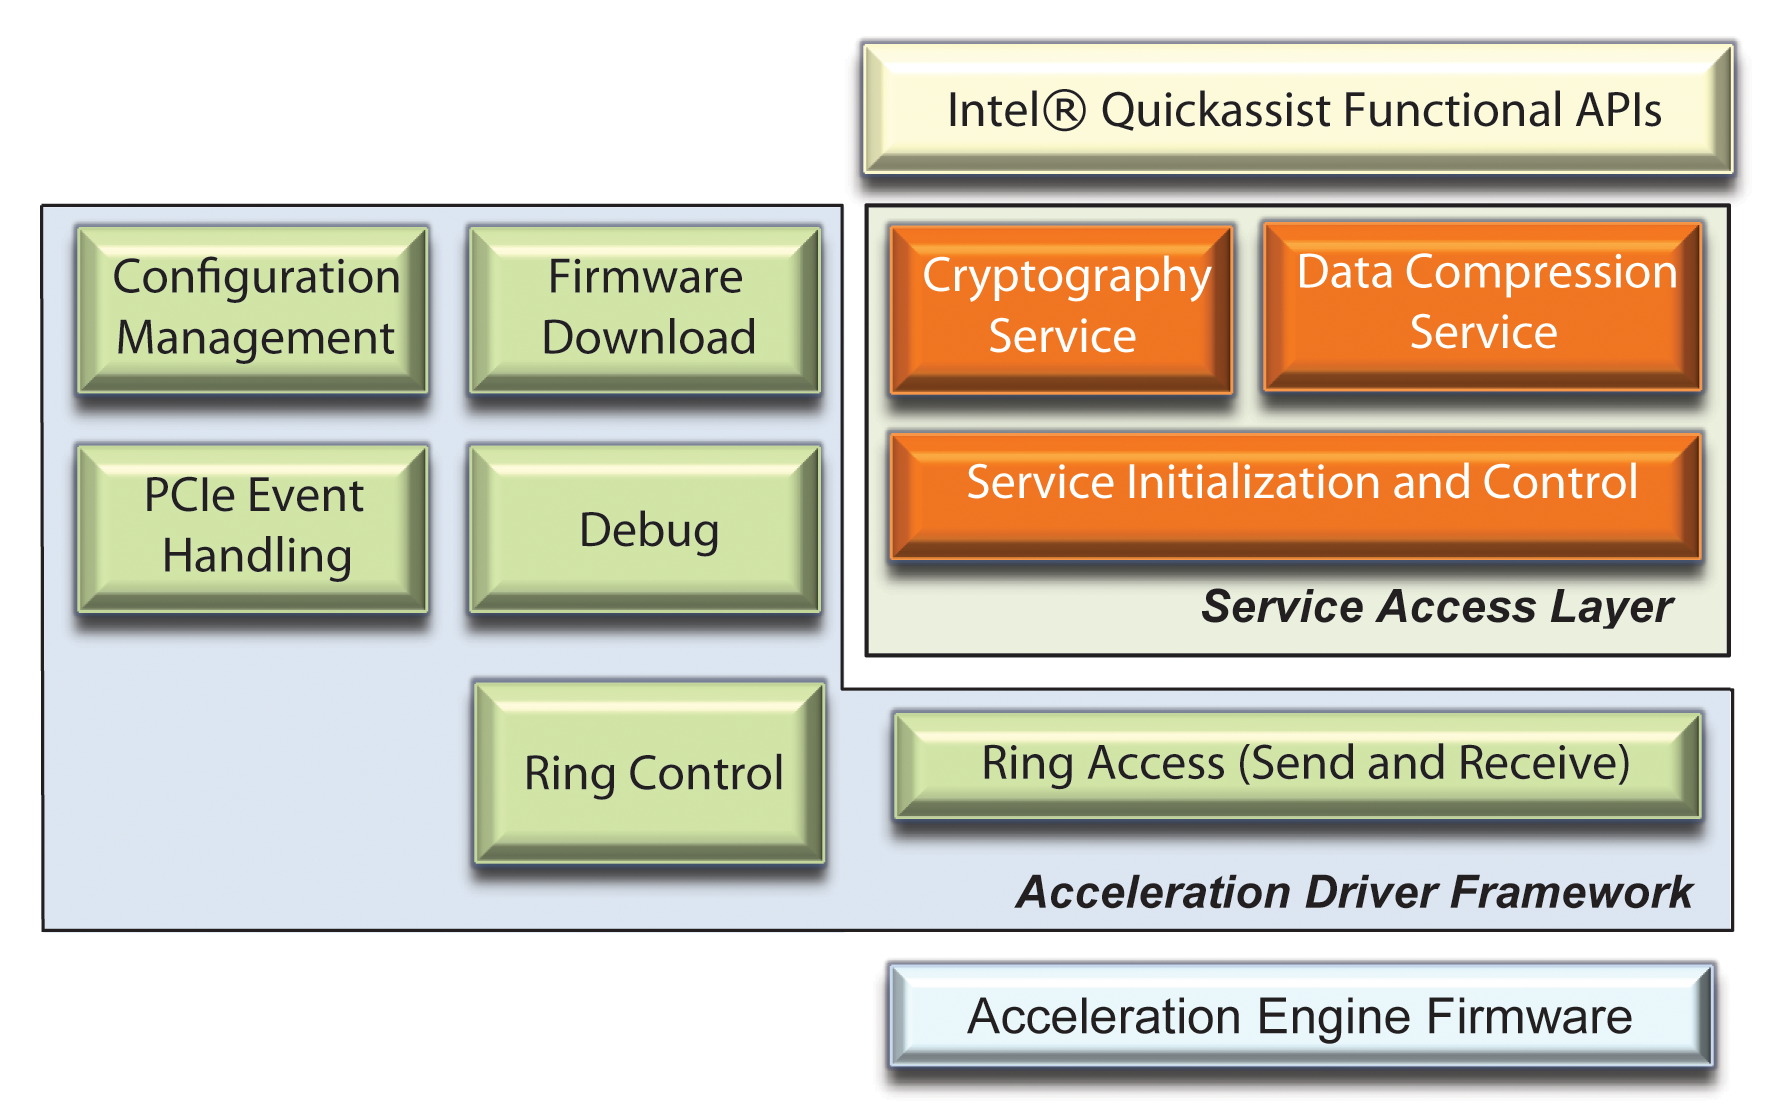 Intel QuickAssist driver architecture. 